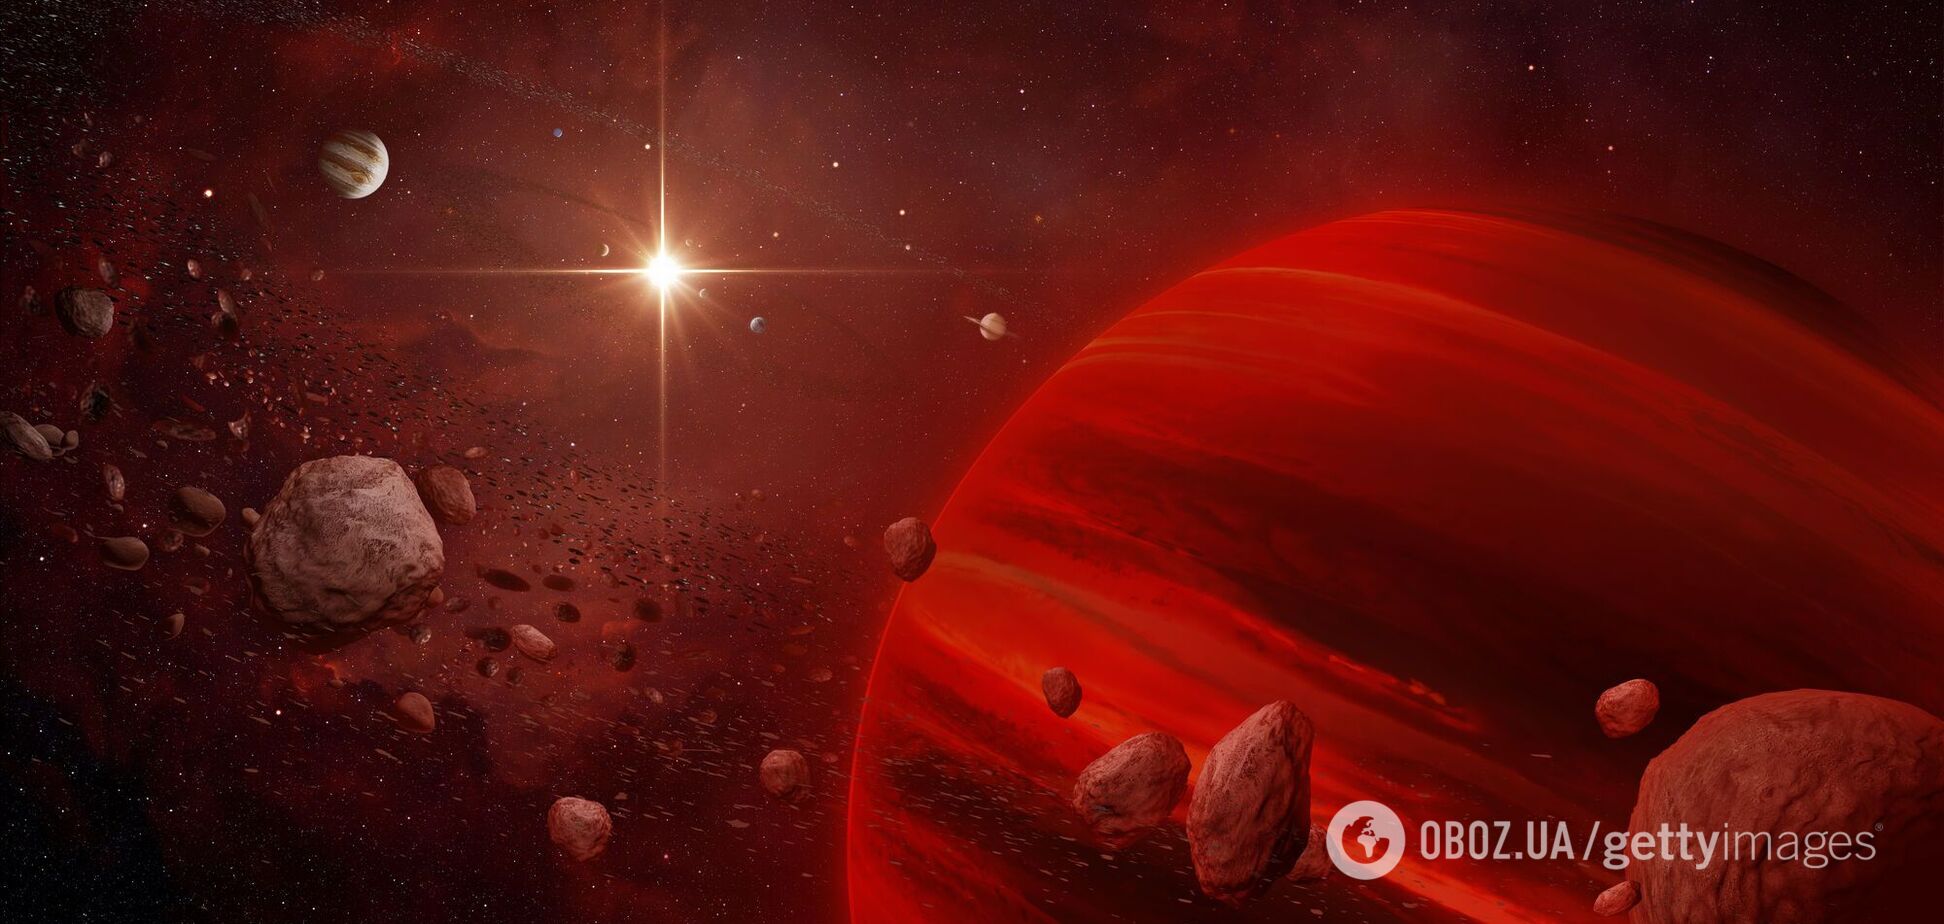 Дослідники виявили у зірках рідкісні надважкі елементи, які не можуть існувати на Землі